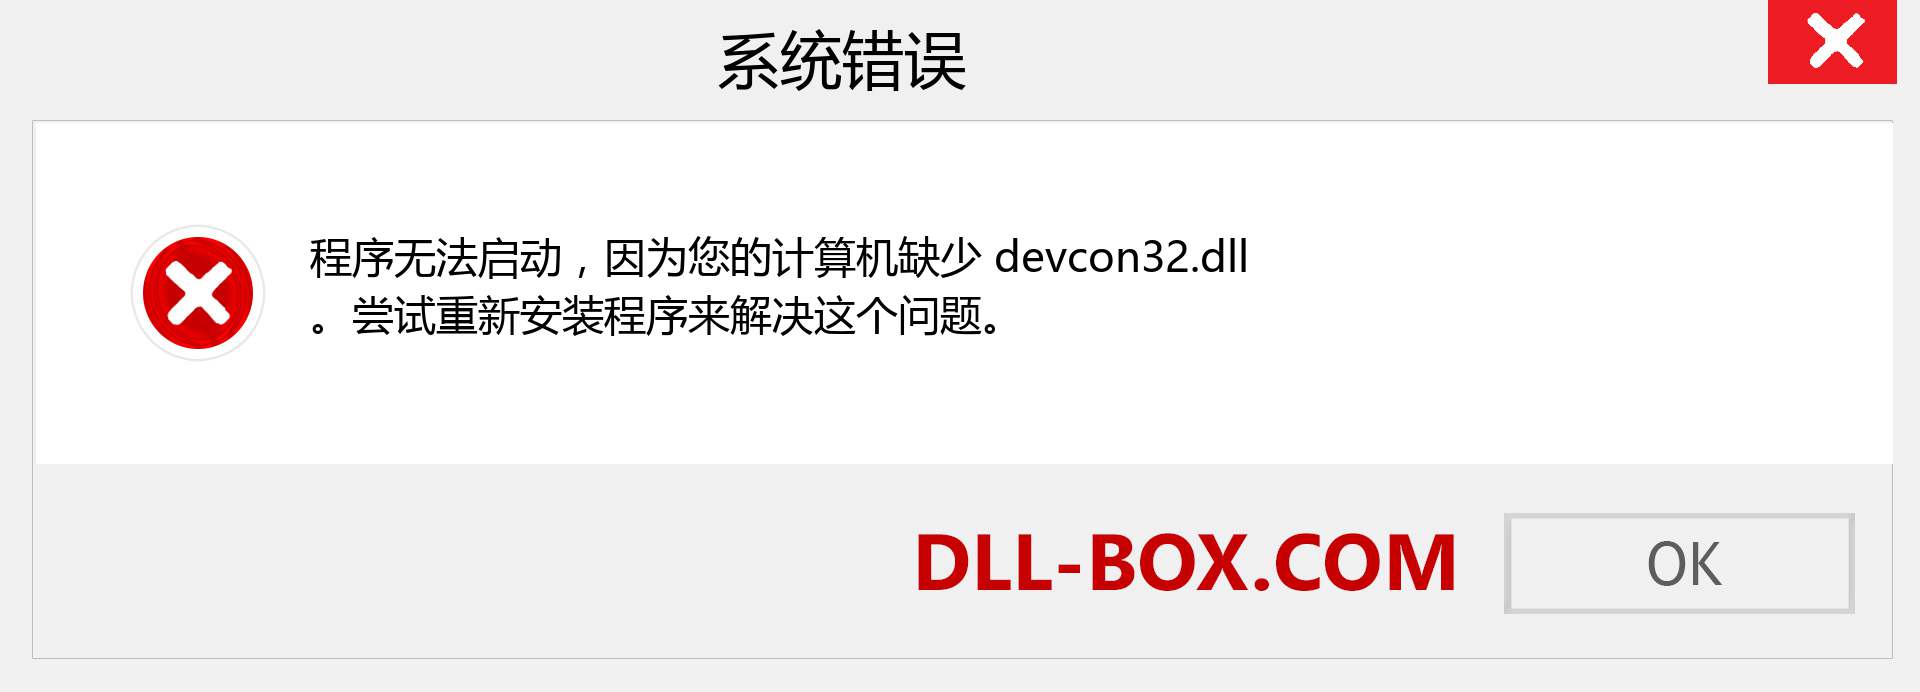 devcon32.dll 文件丢失？。 适用于 Windows 7、8、10 的下载 - 修复 Windows、照片、图像上的 devcon32 dll 丢失错误